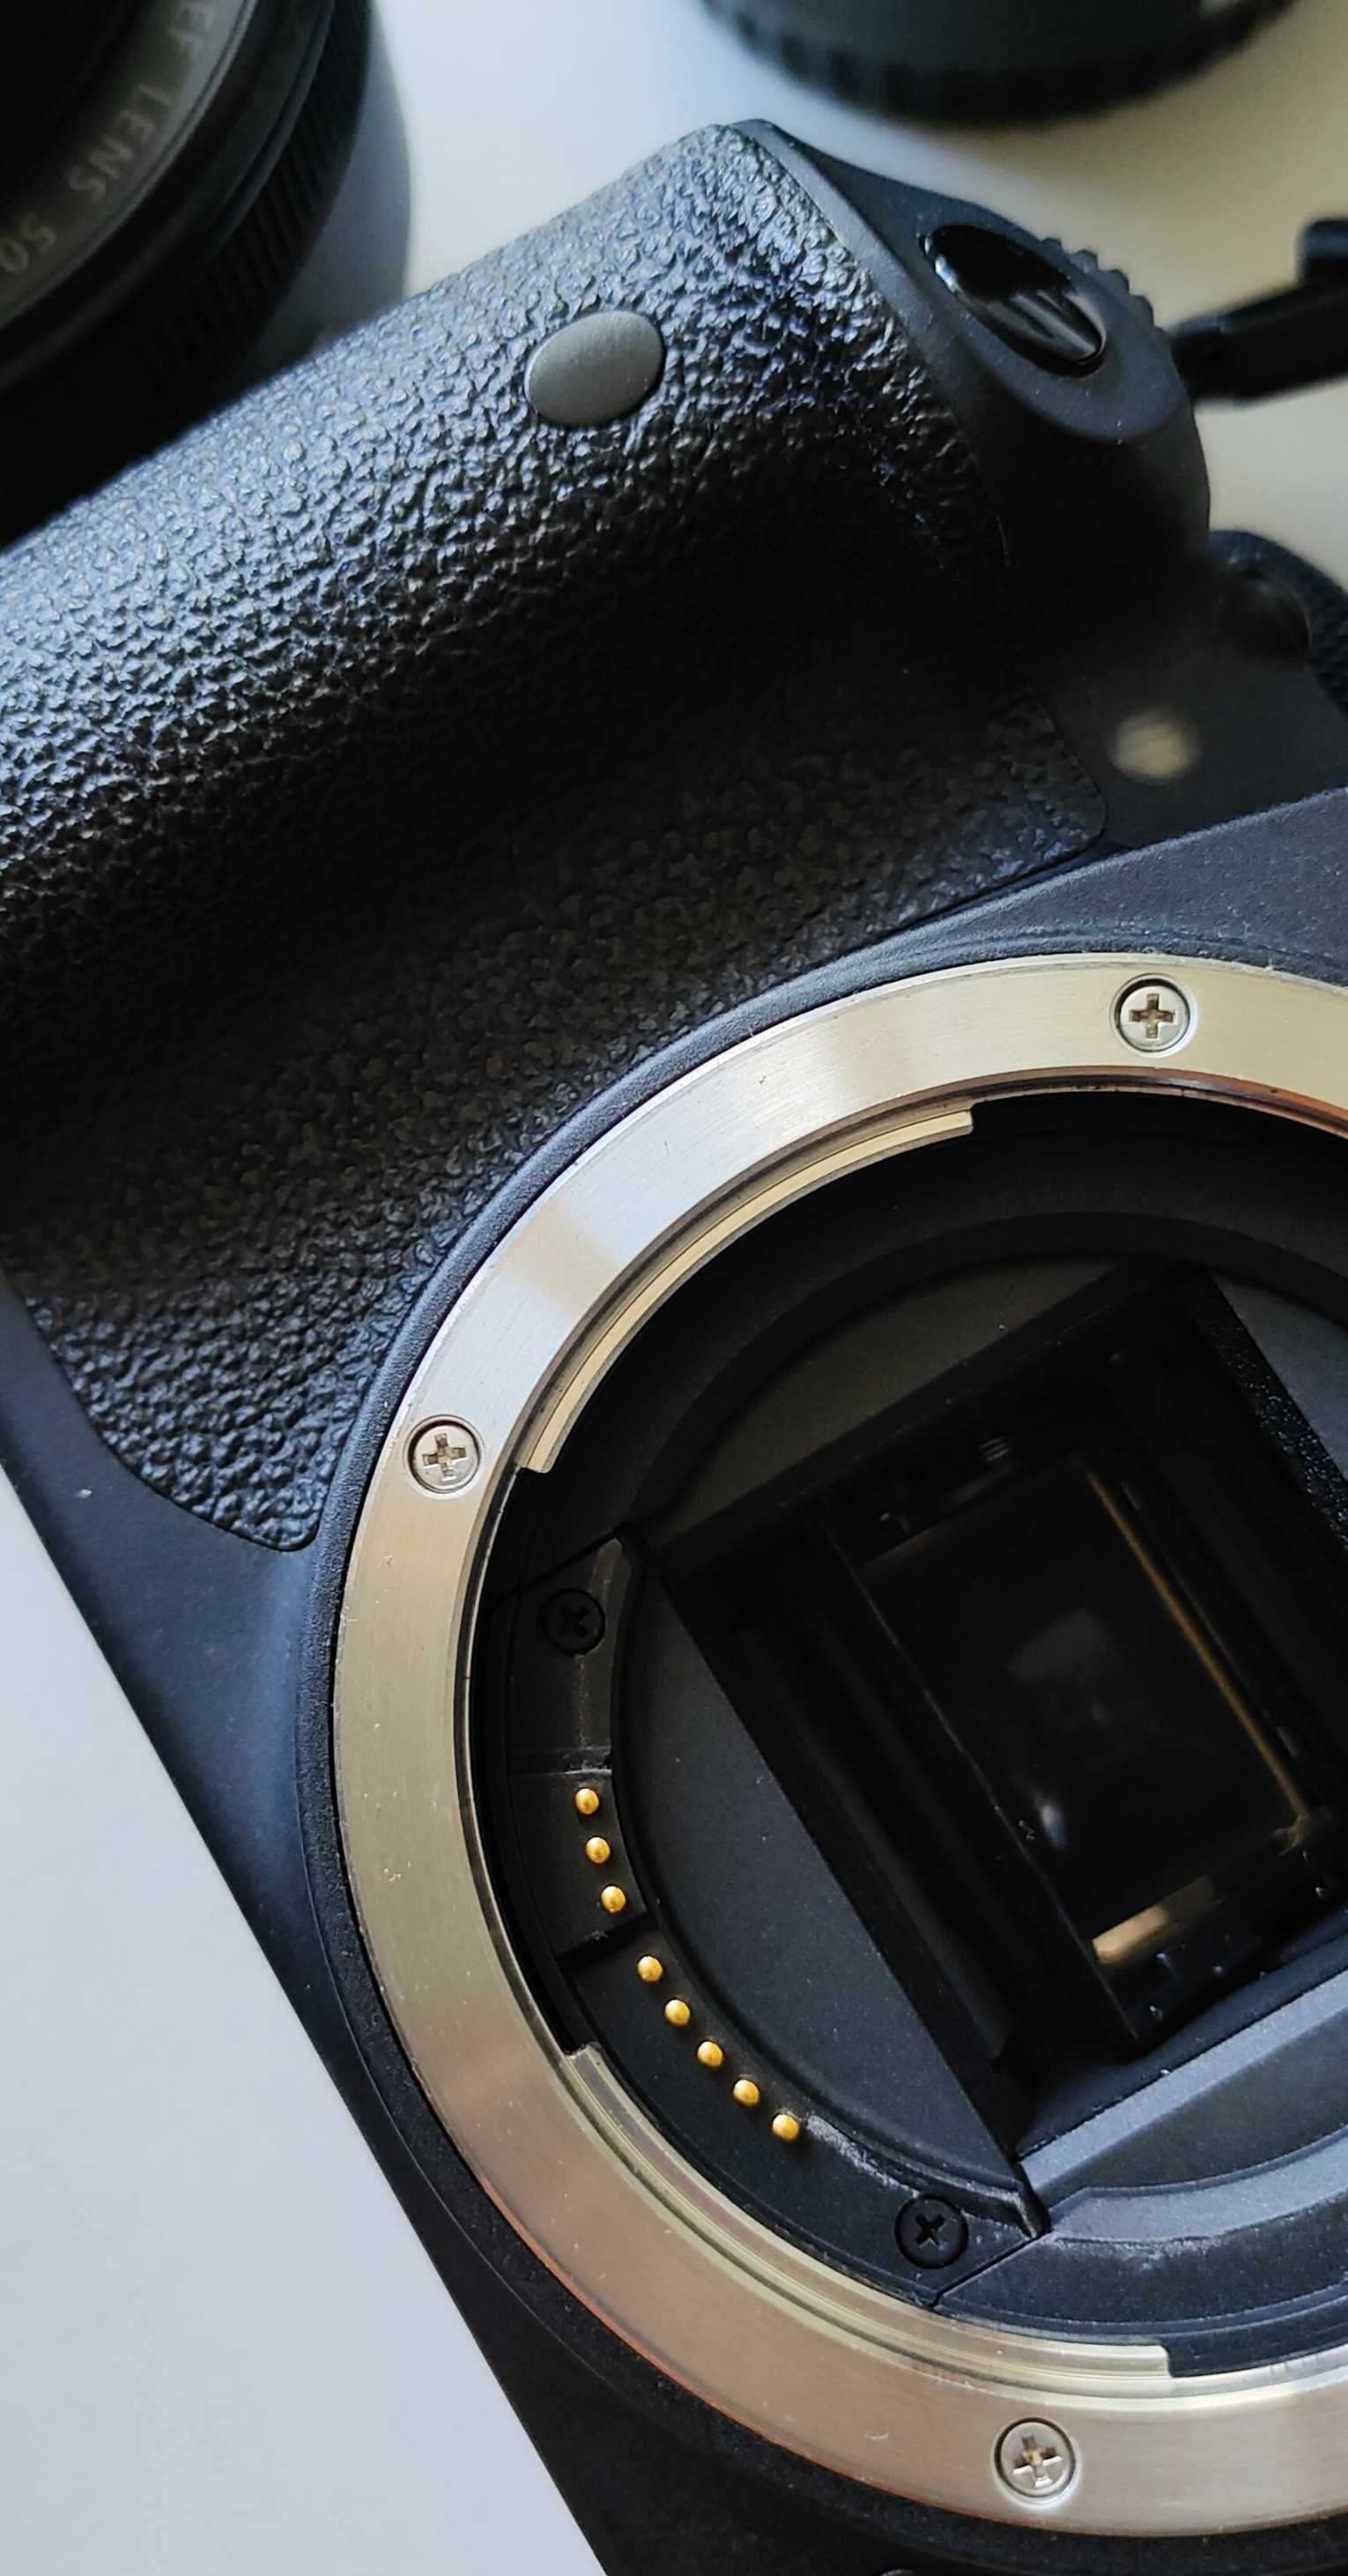 Canon 700D Aparat fotograficzny, lustrzanka z zestawem obiektywów